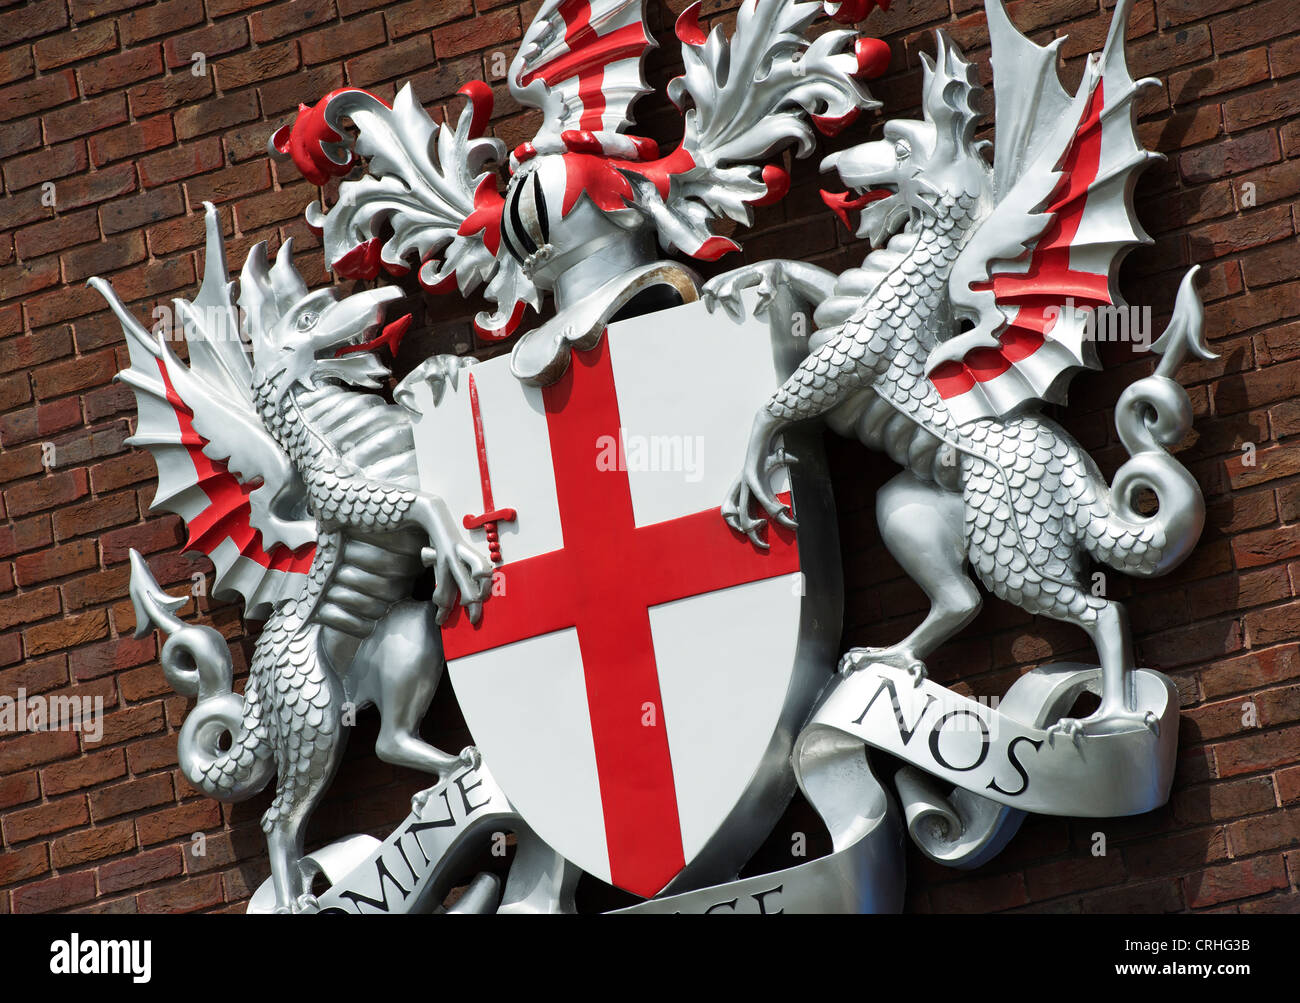 Ville de London armoiries des Dragons et bouclier Croix St Georges Banque D'Images